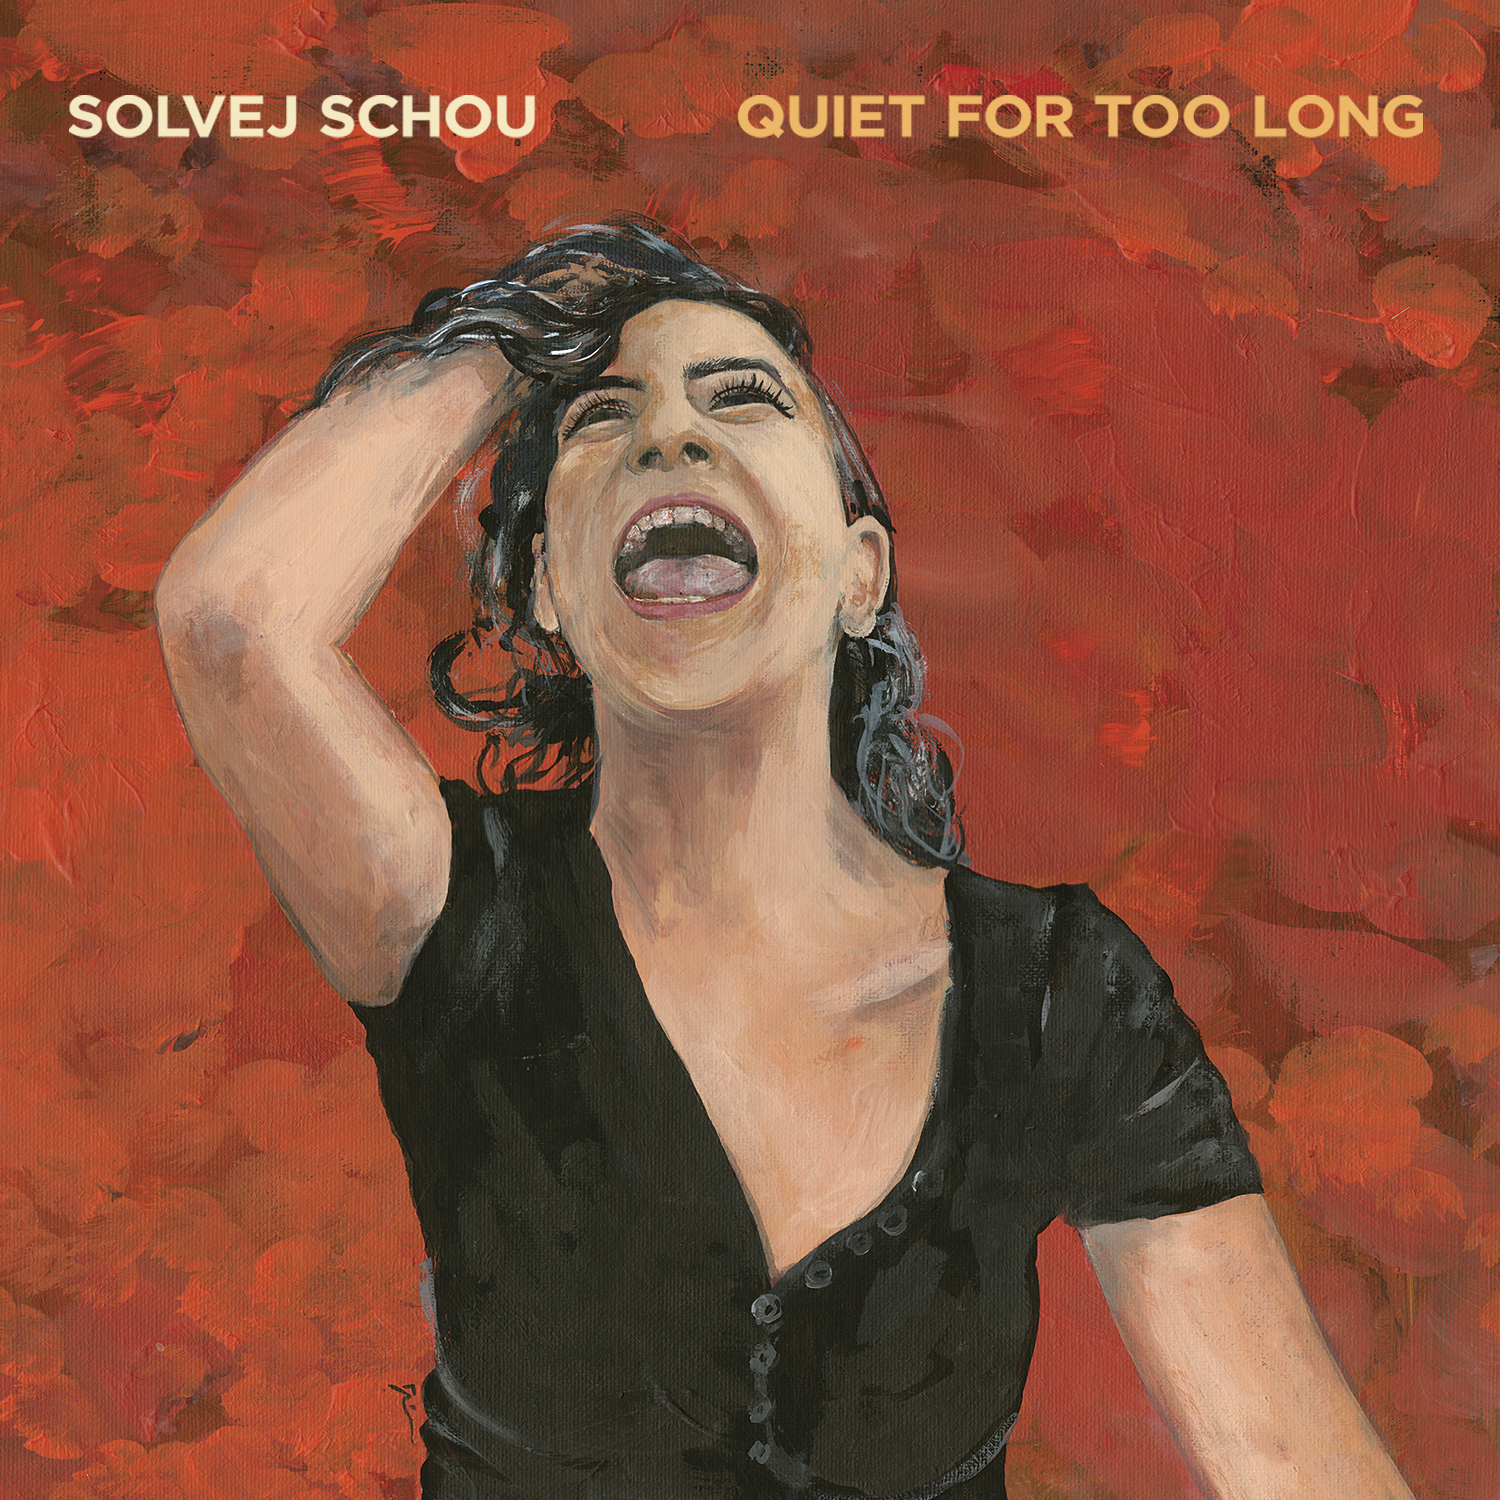 2019_Solvej_Schou_Quiet_For_Too_Long_album_cover.jpg